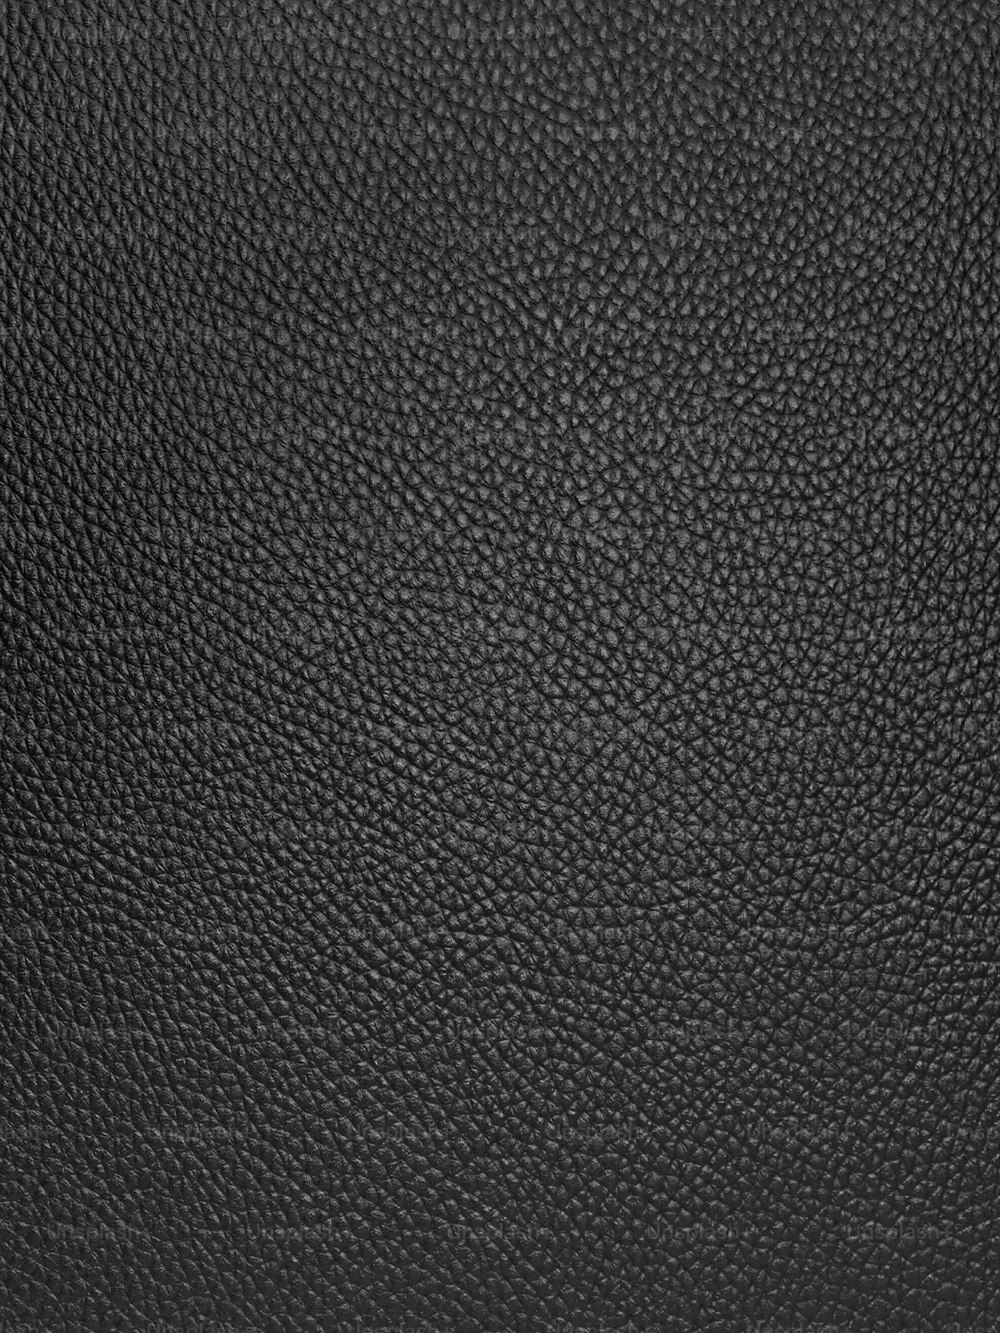 Un primer plano de una textura de cuero negro